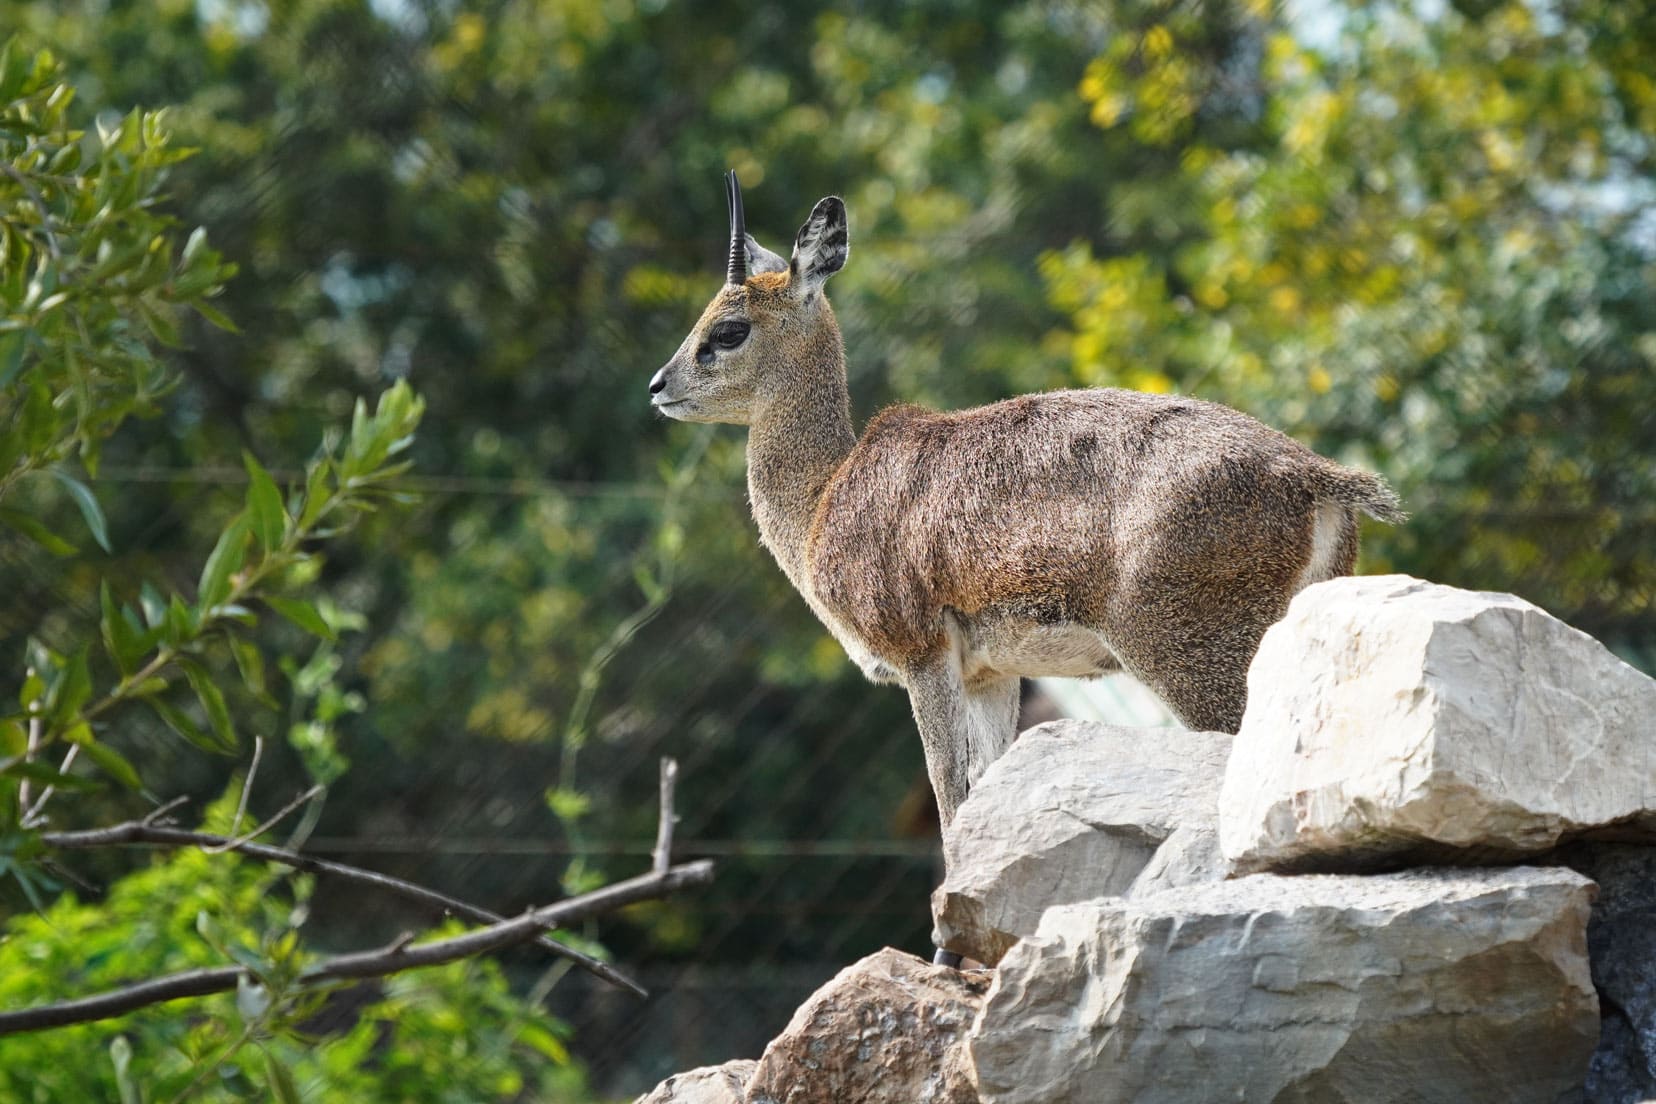 Klipspringer - small antelope stood on rocks